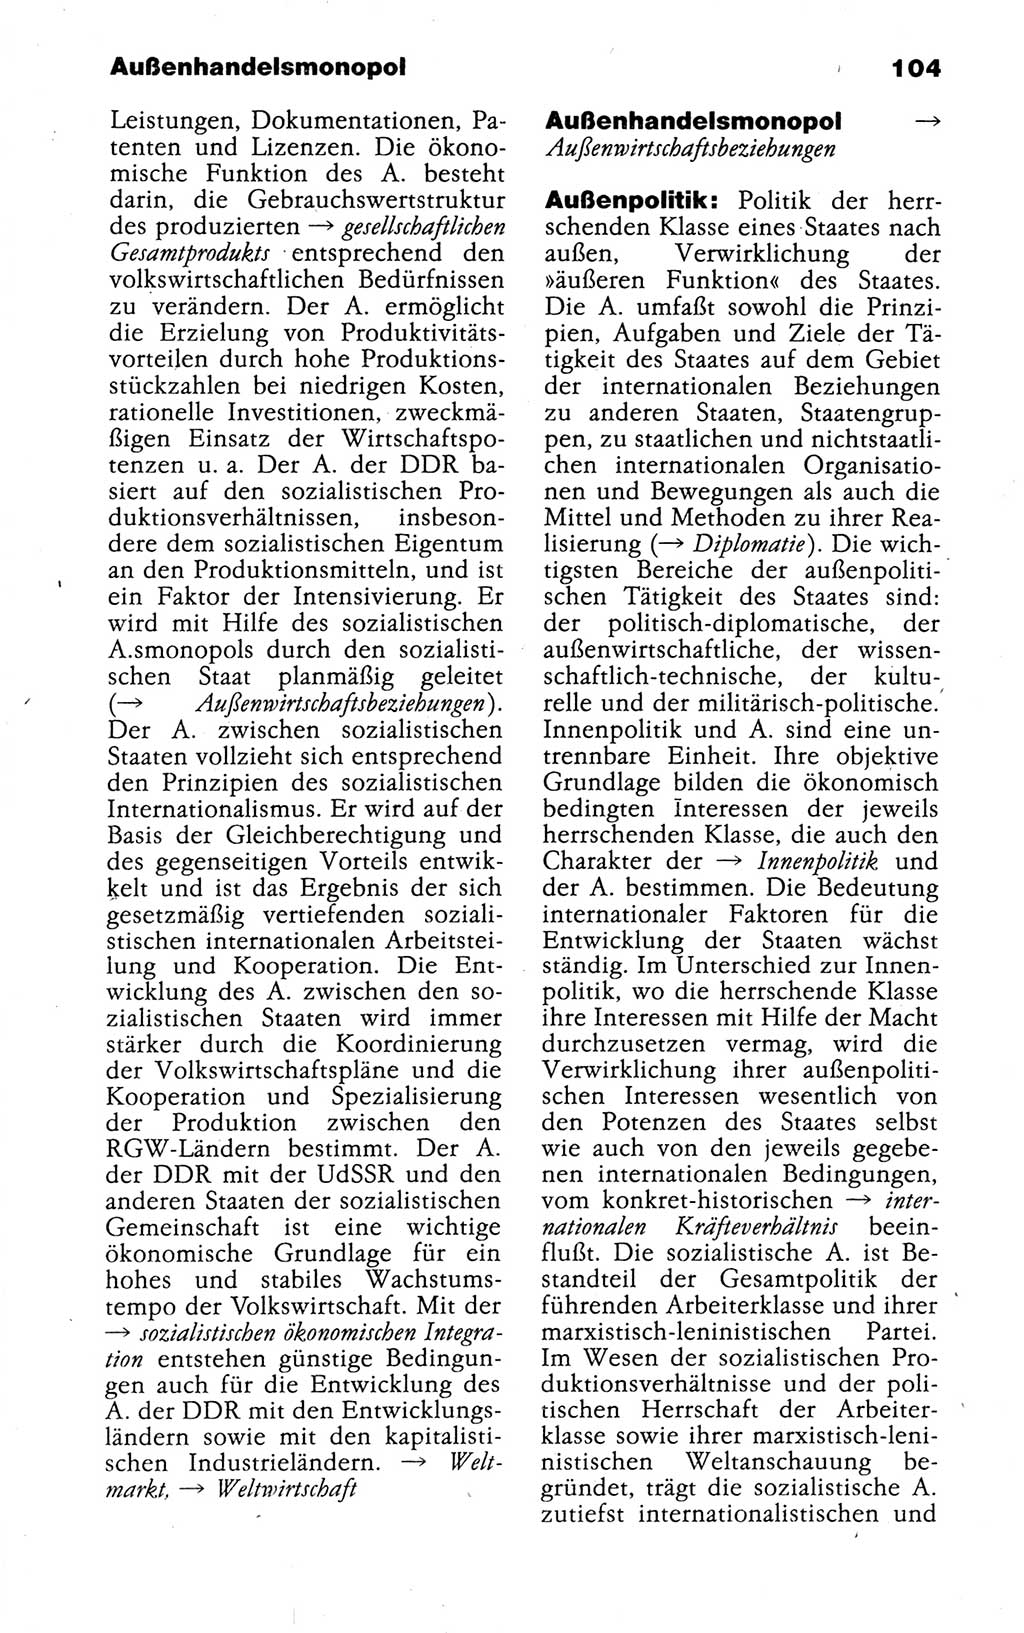 Kleines politisches Wörterbuch [Deutsche Demokratische Republik (DDR)] 1988, Seite 104 (Kl. pol. Wb. DDR 1988, S. 104)